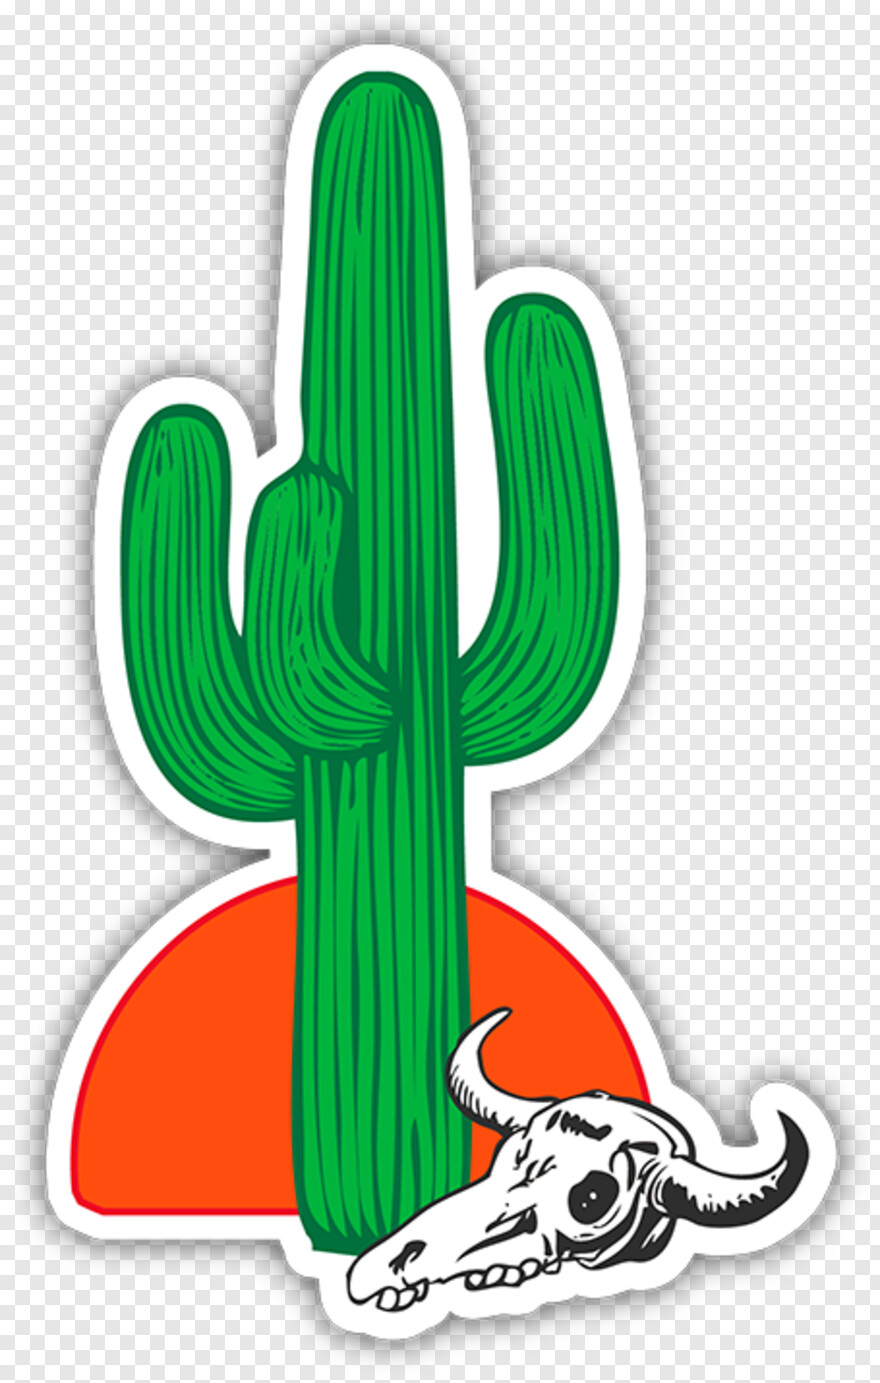 cactus # 1101357